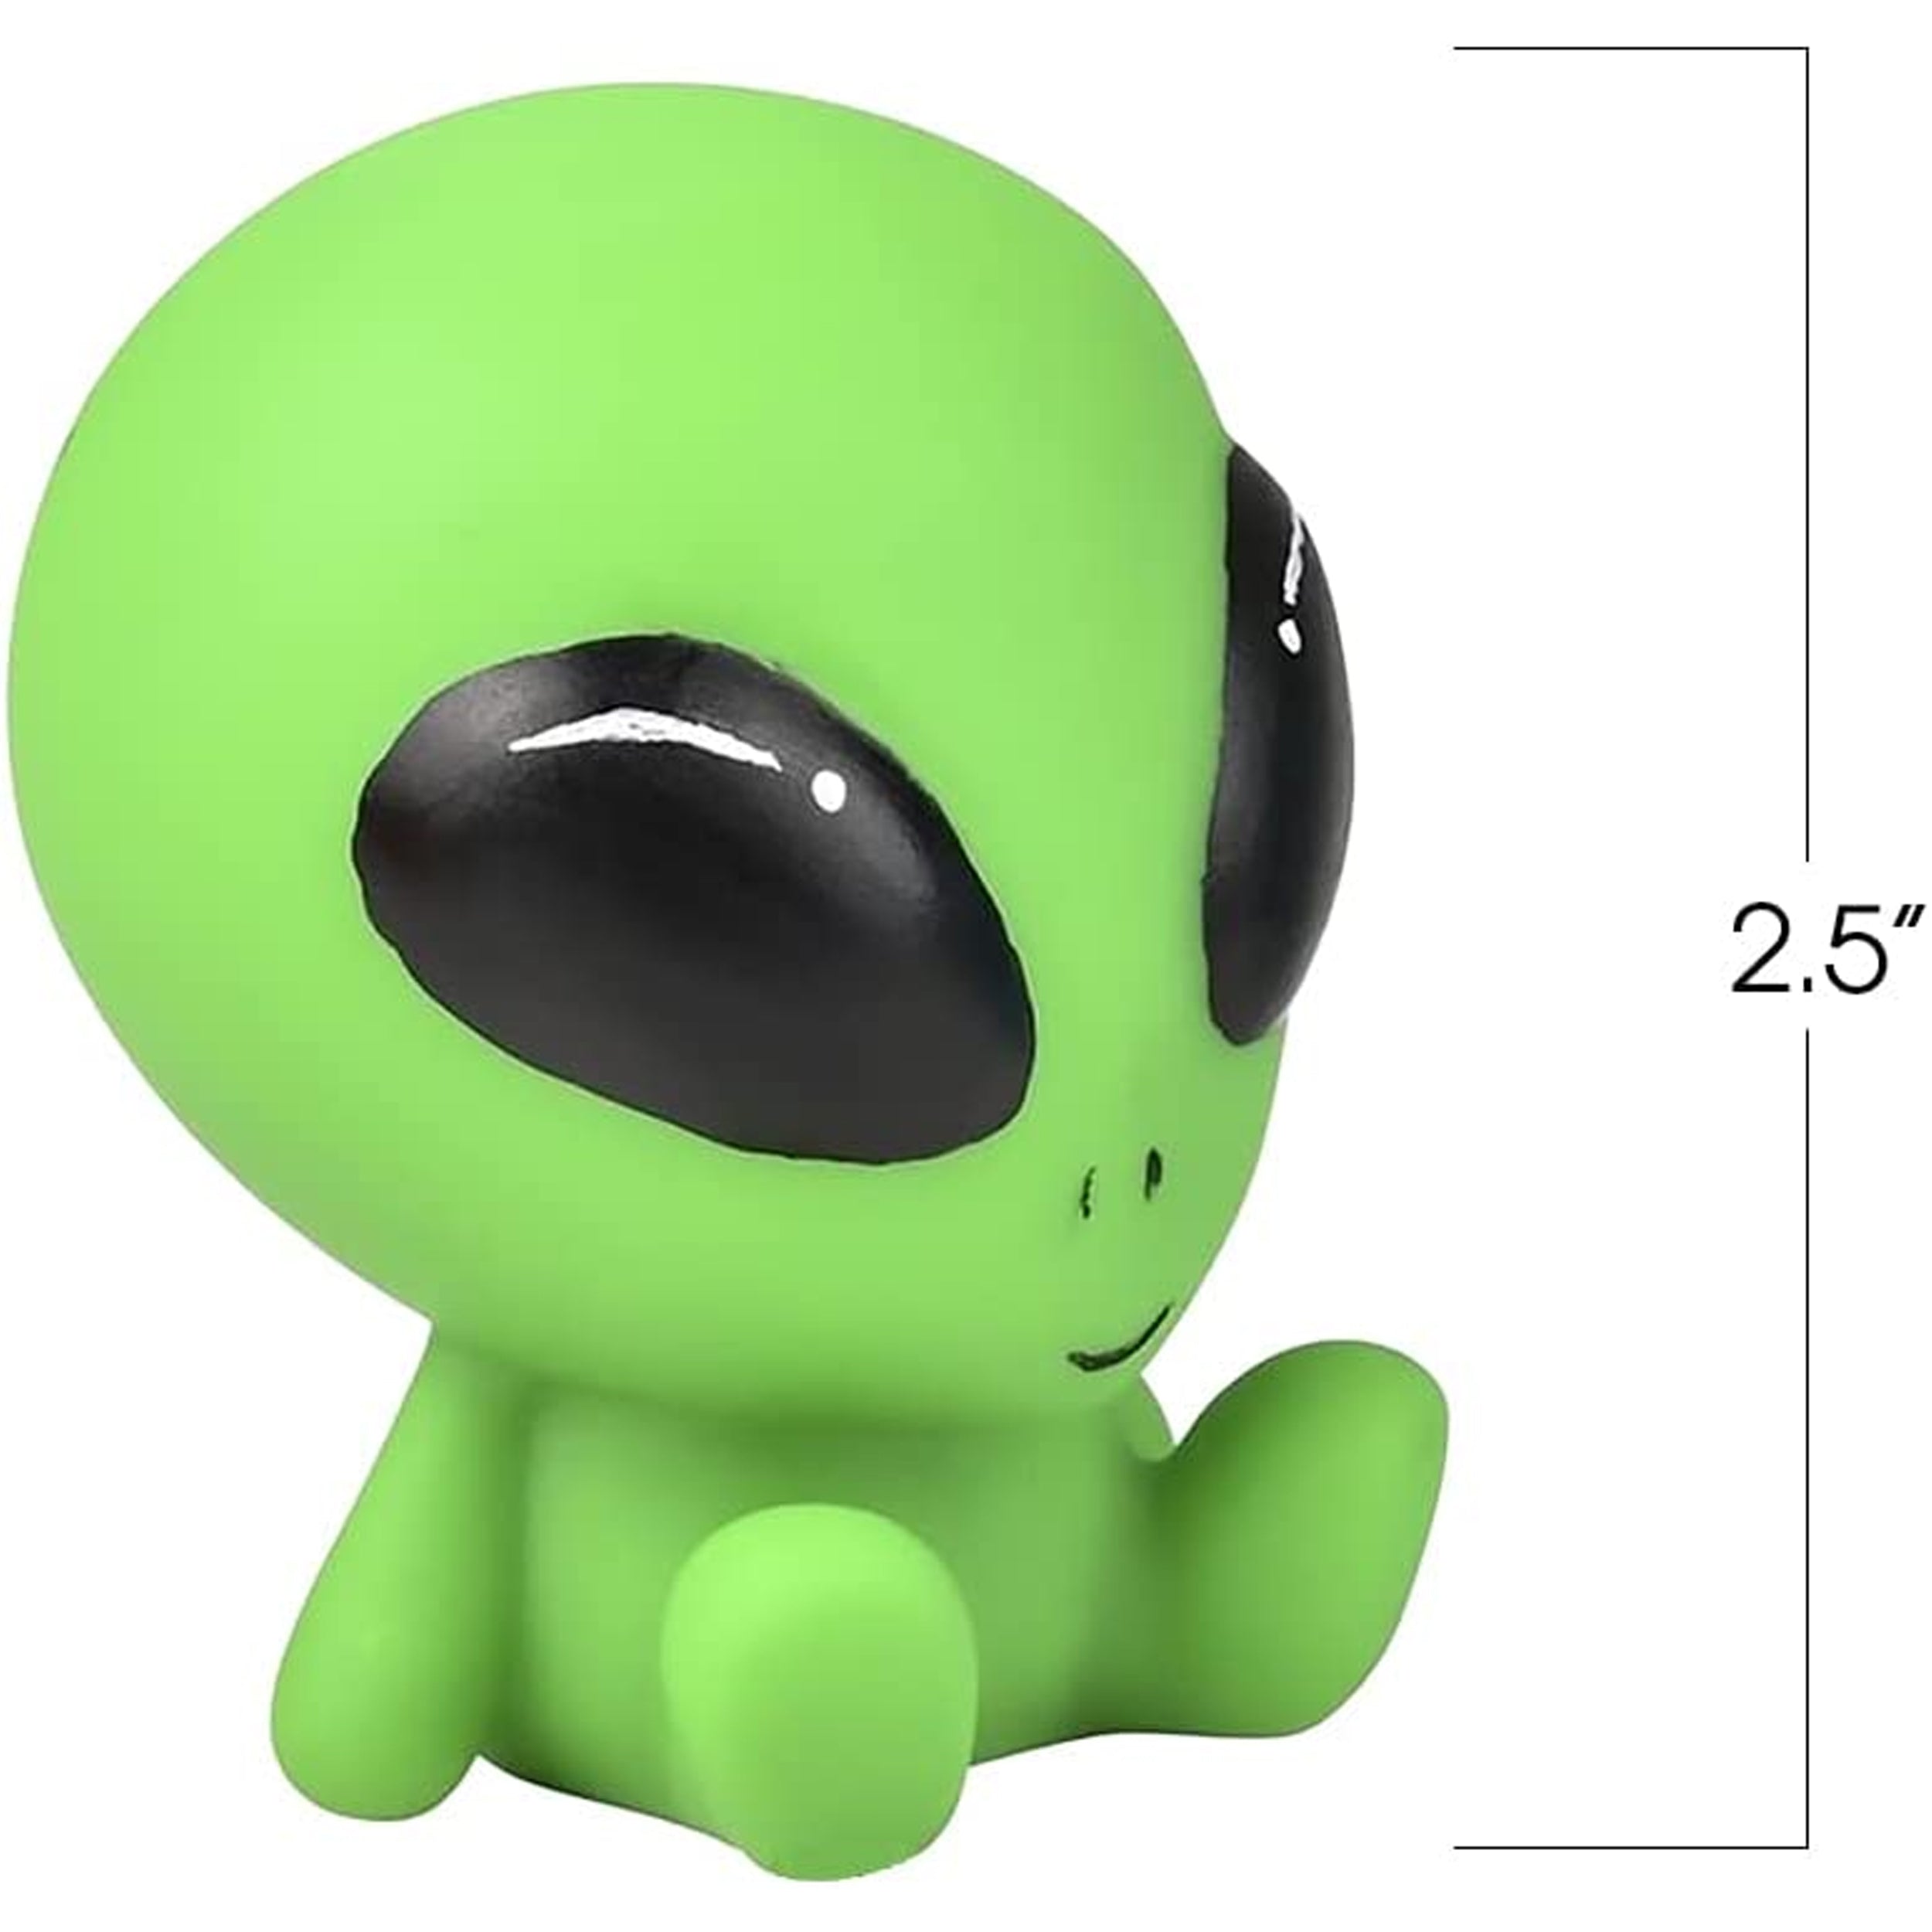 Alien Rubber Squeeze kids Toy (1 Dorzen=$23.99)